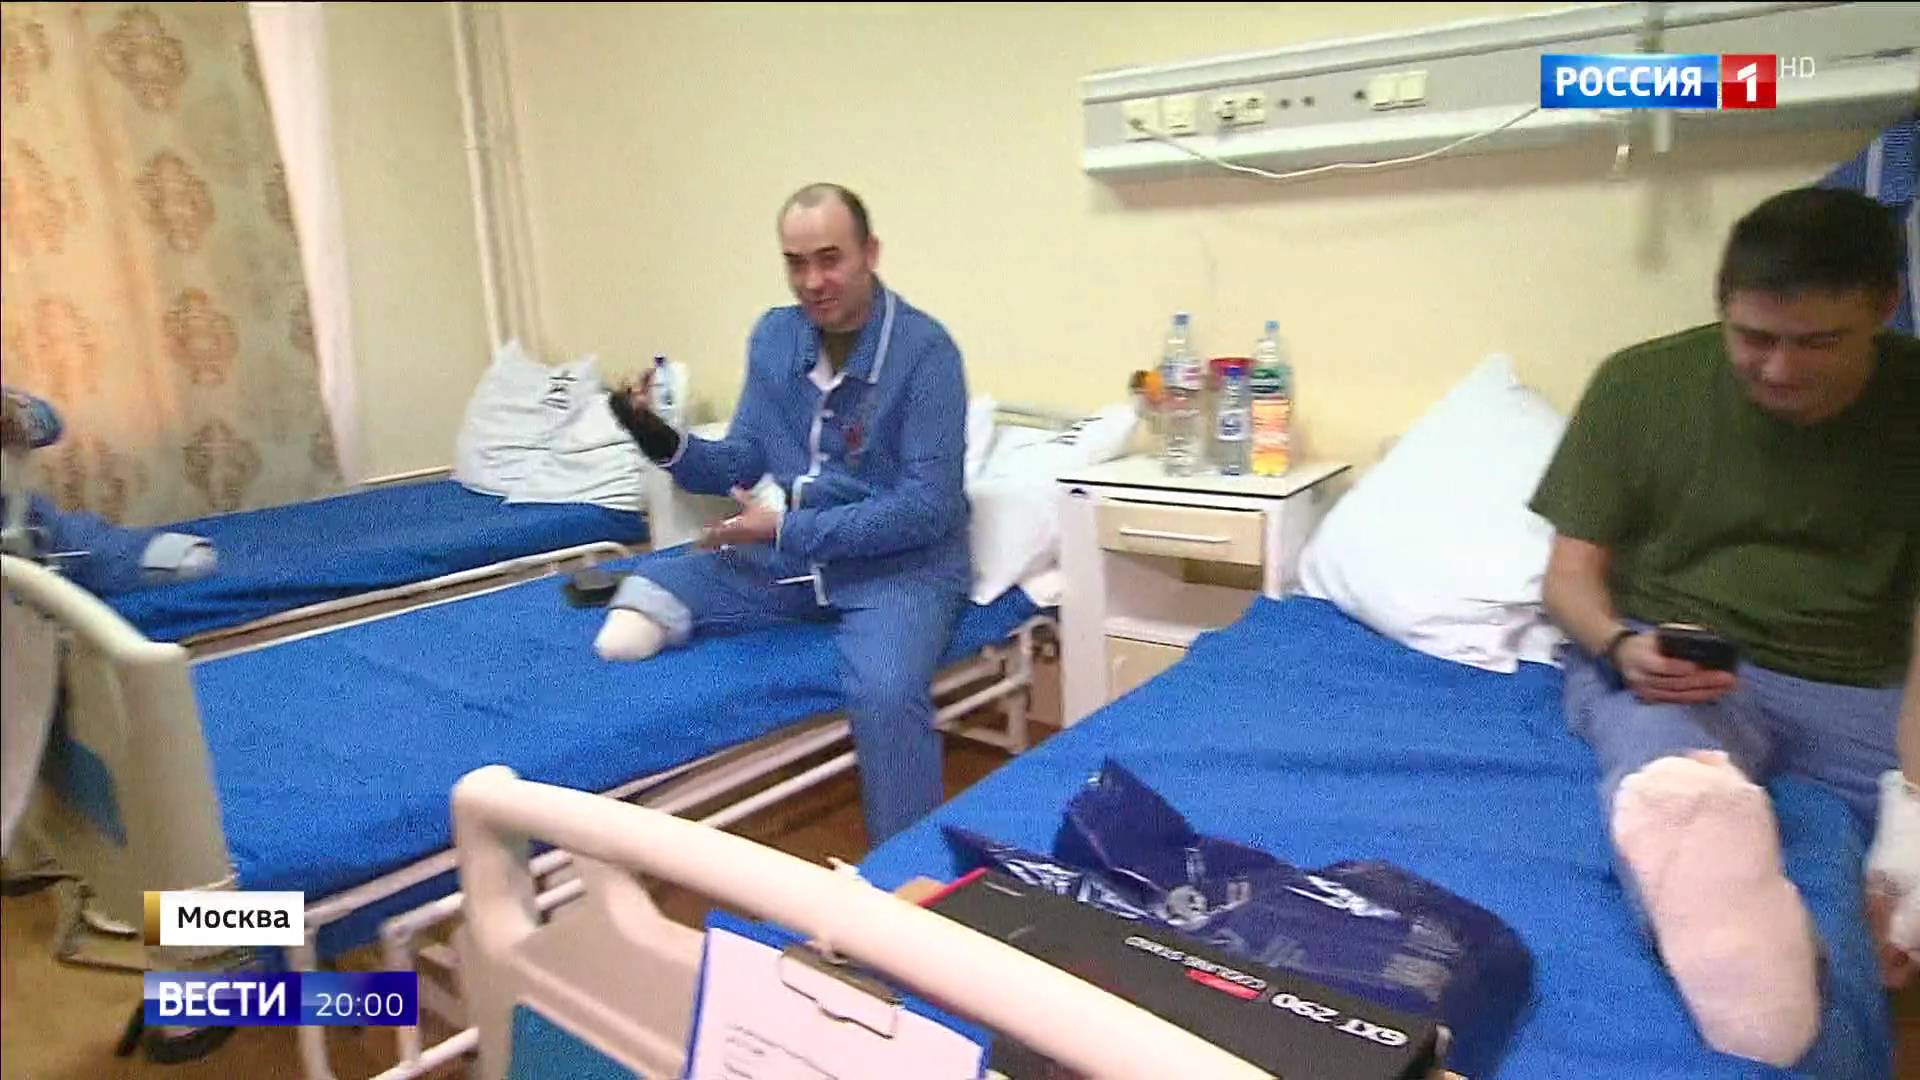 Beznogo żołnierzw w szpitalu - w niebieskiej piżamie